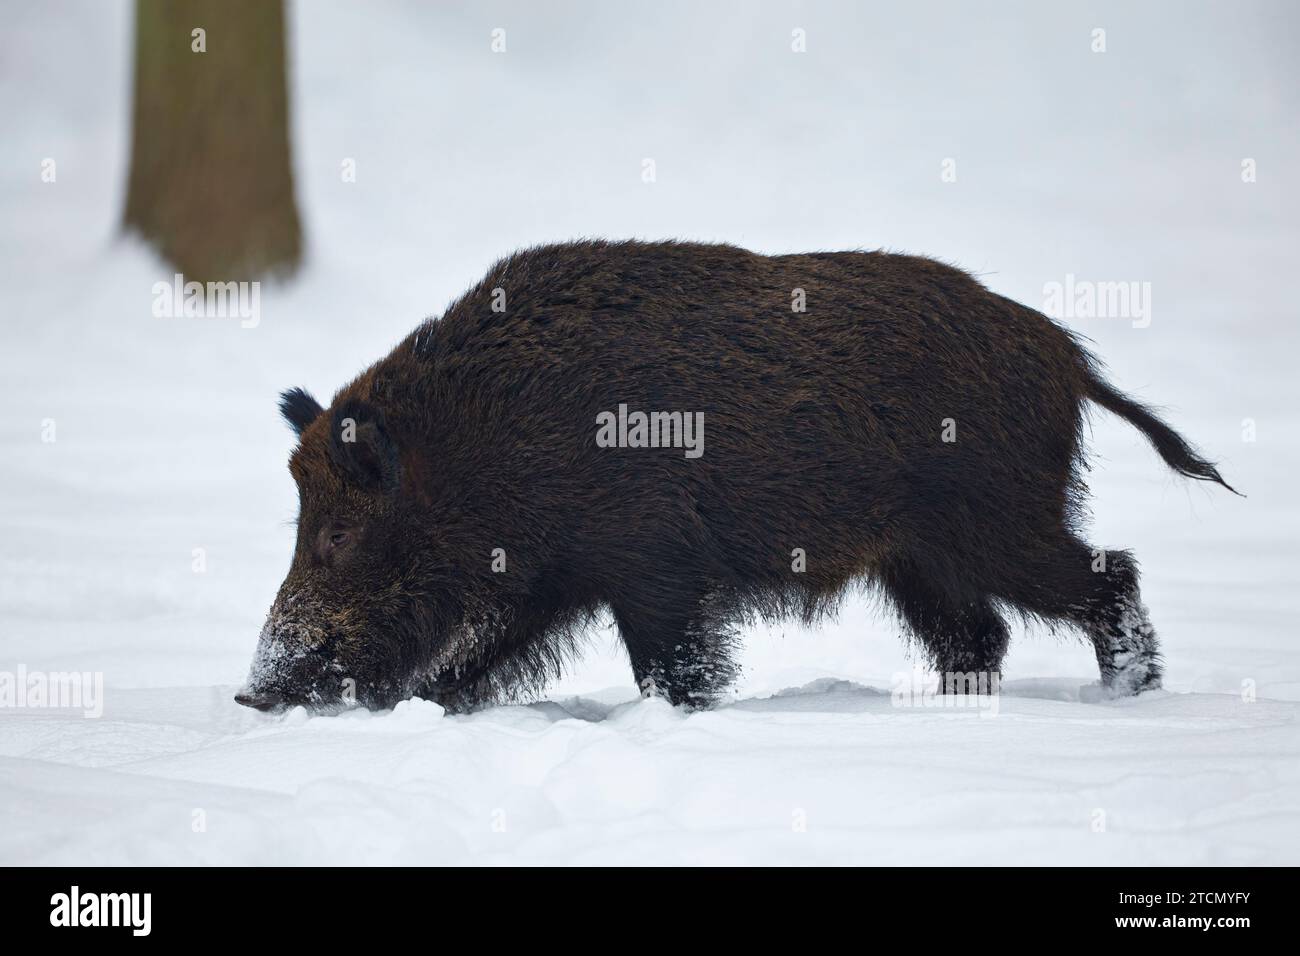 Cinghiale, Sus scrofa, in inverno alla ricerca di cibo in un bosco bavarese Foto Stock